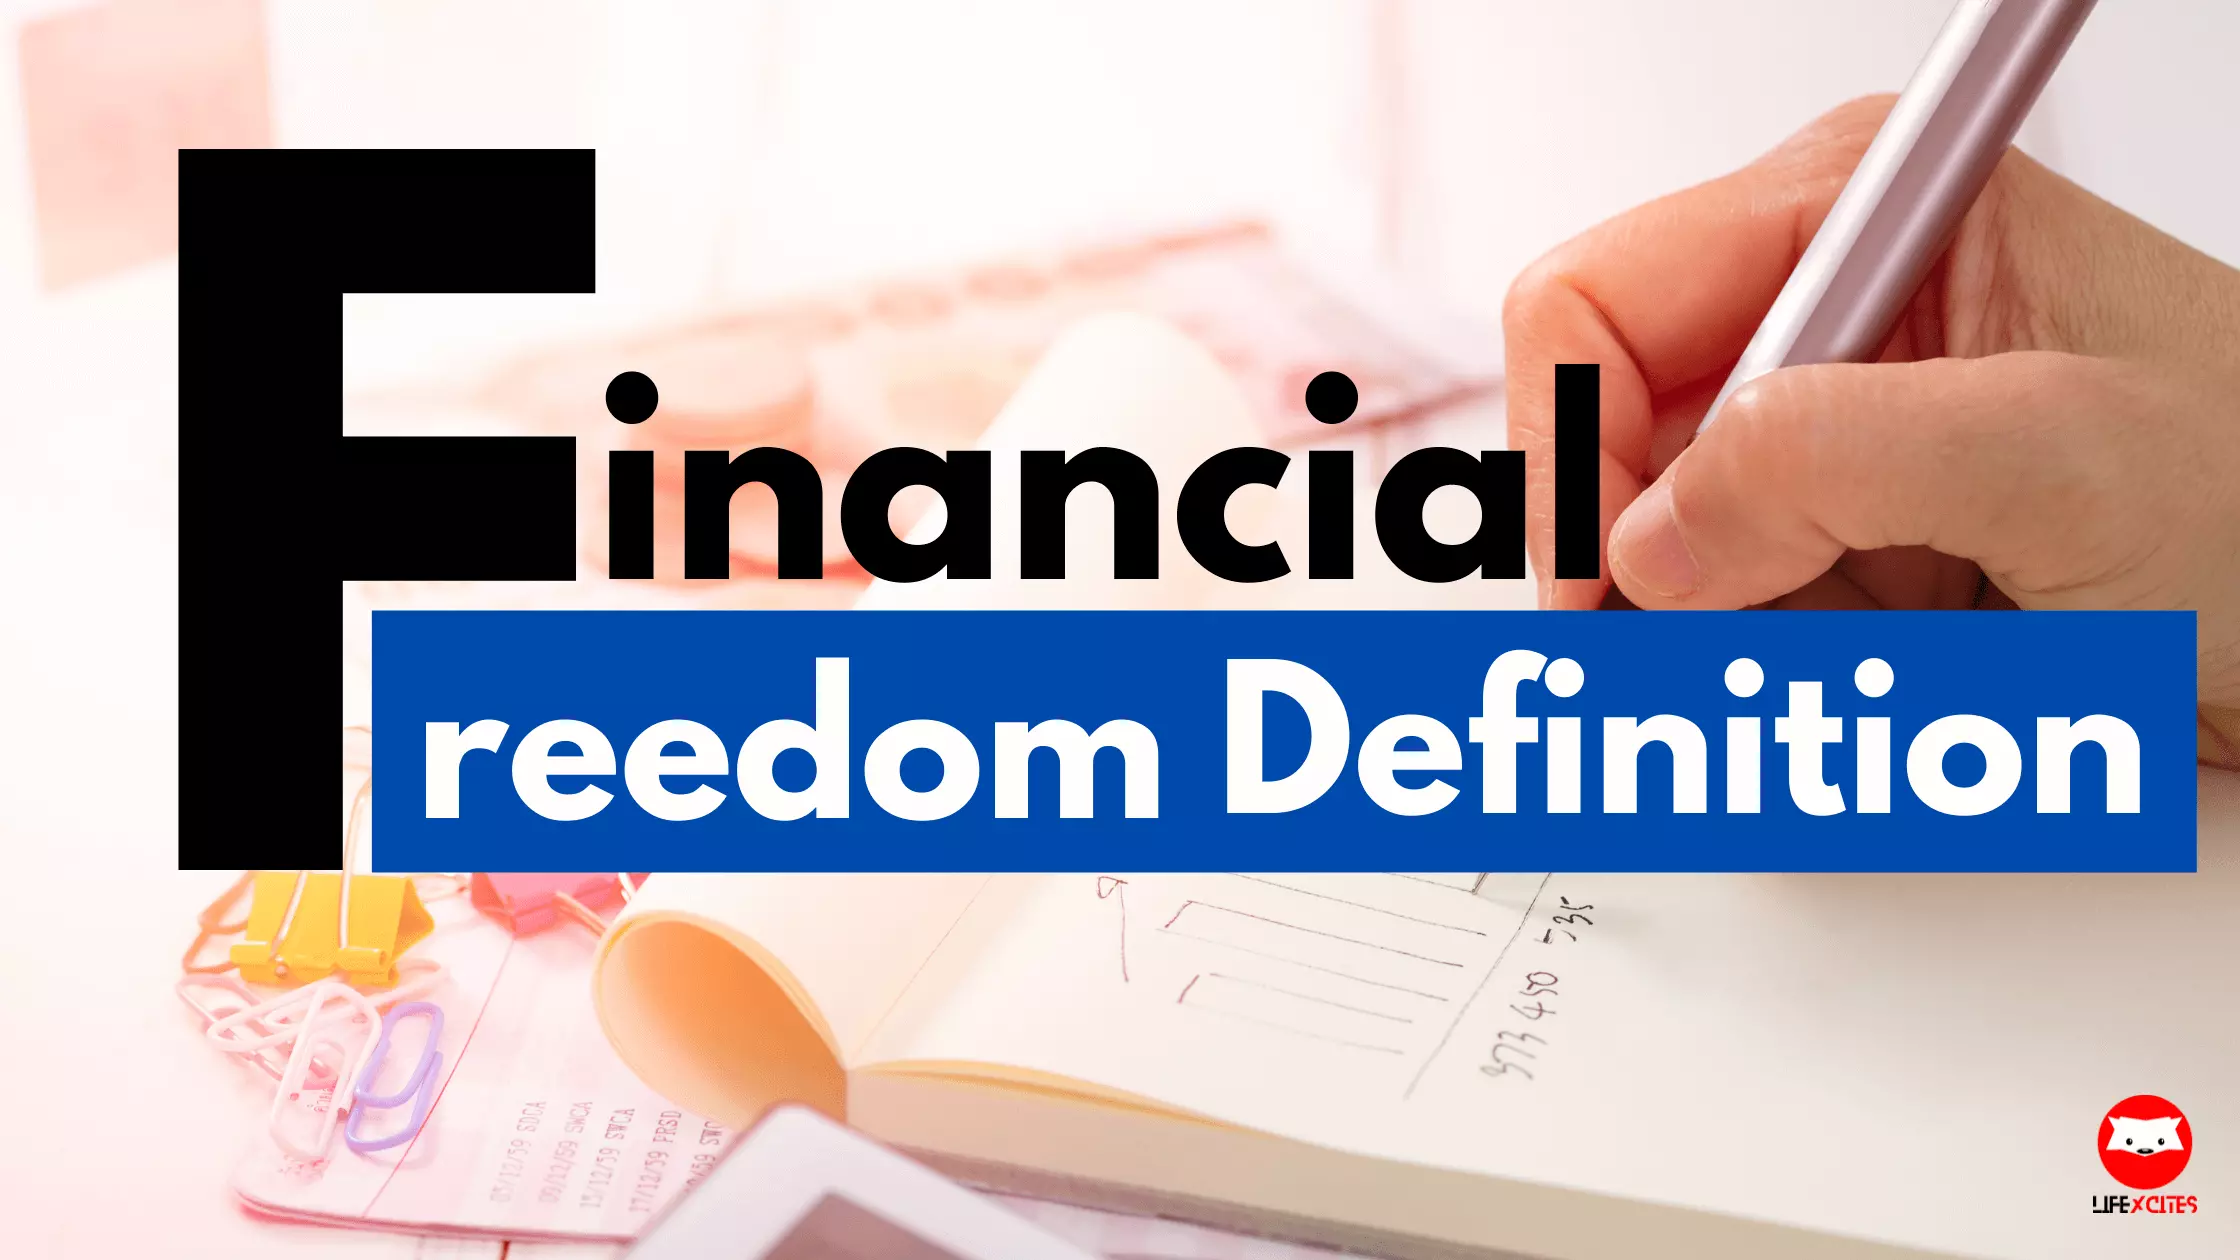 Financial Freedom Definition​